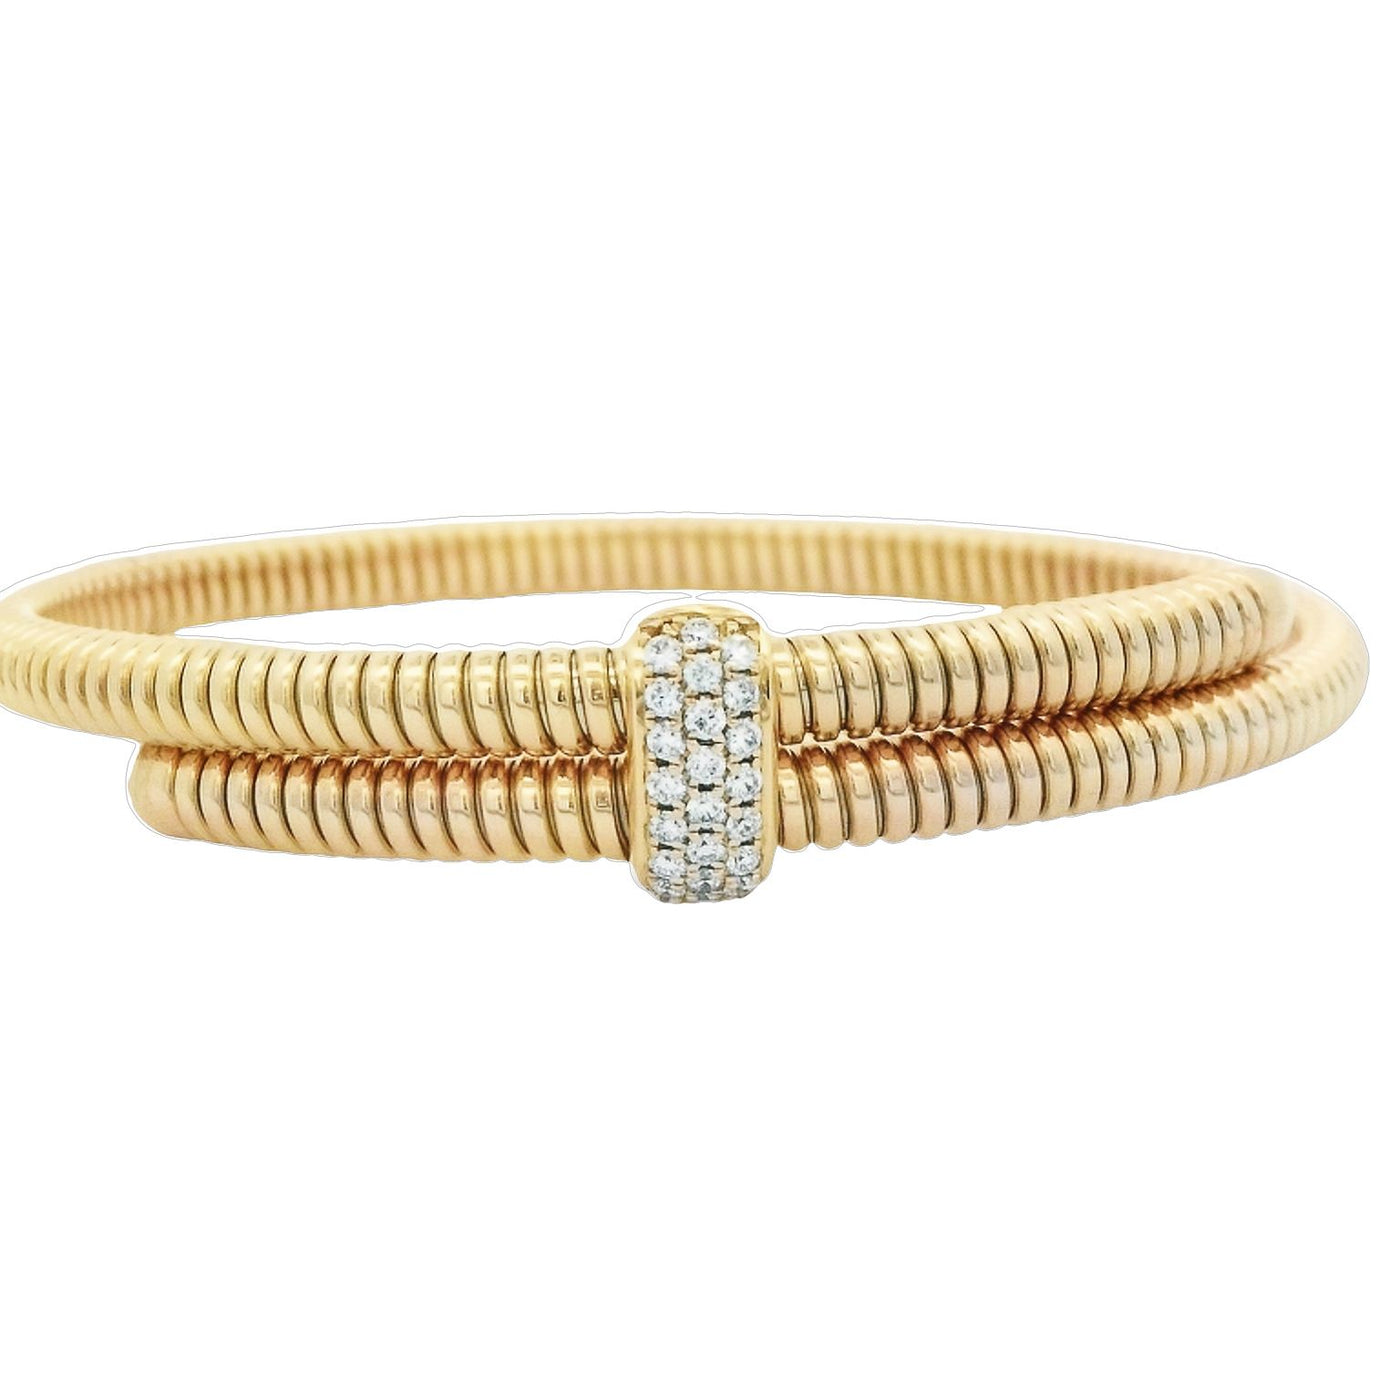 Afarin Co 18k Yellow Gold Flexible Diamond Bracelet – HBB978